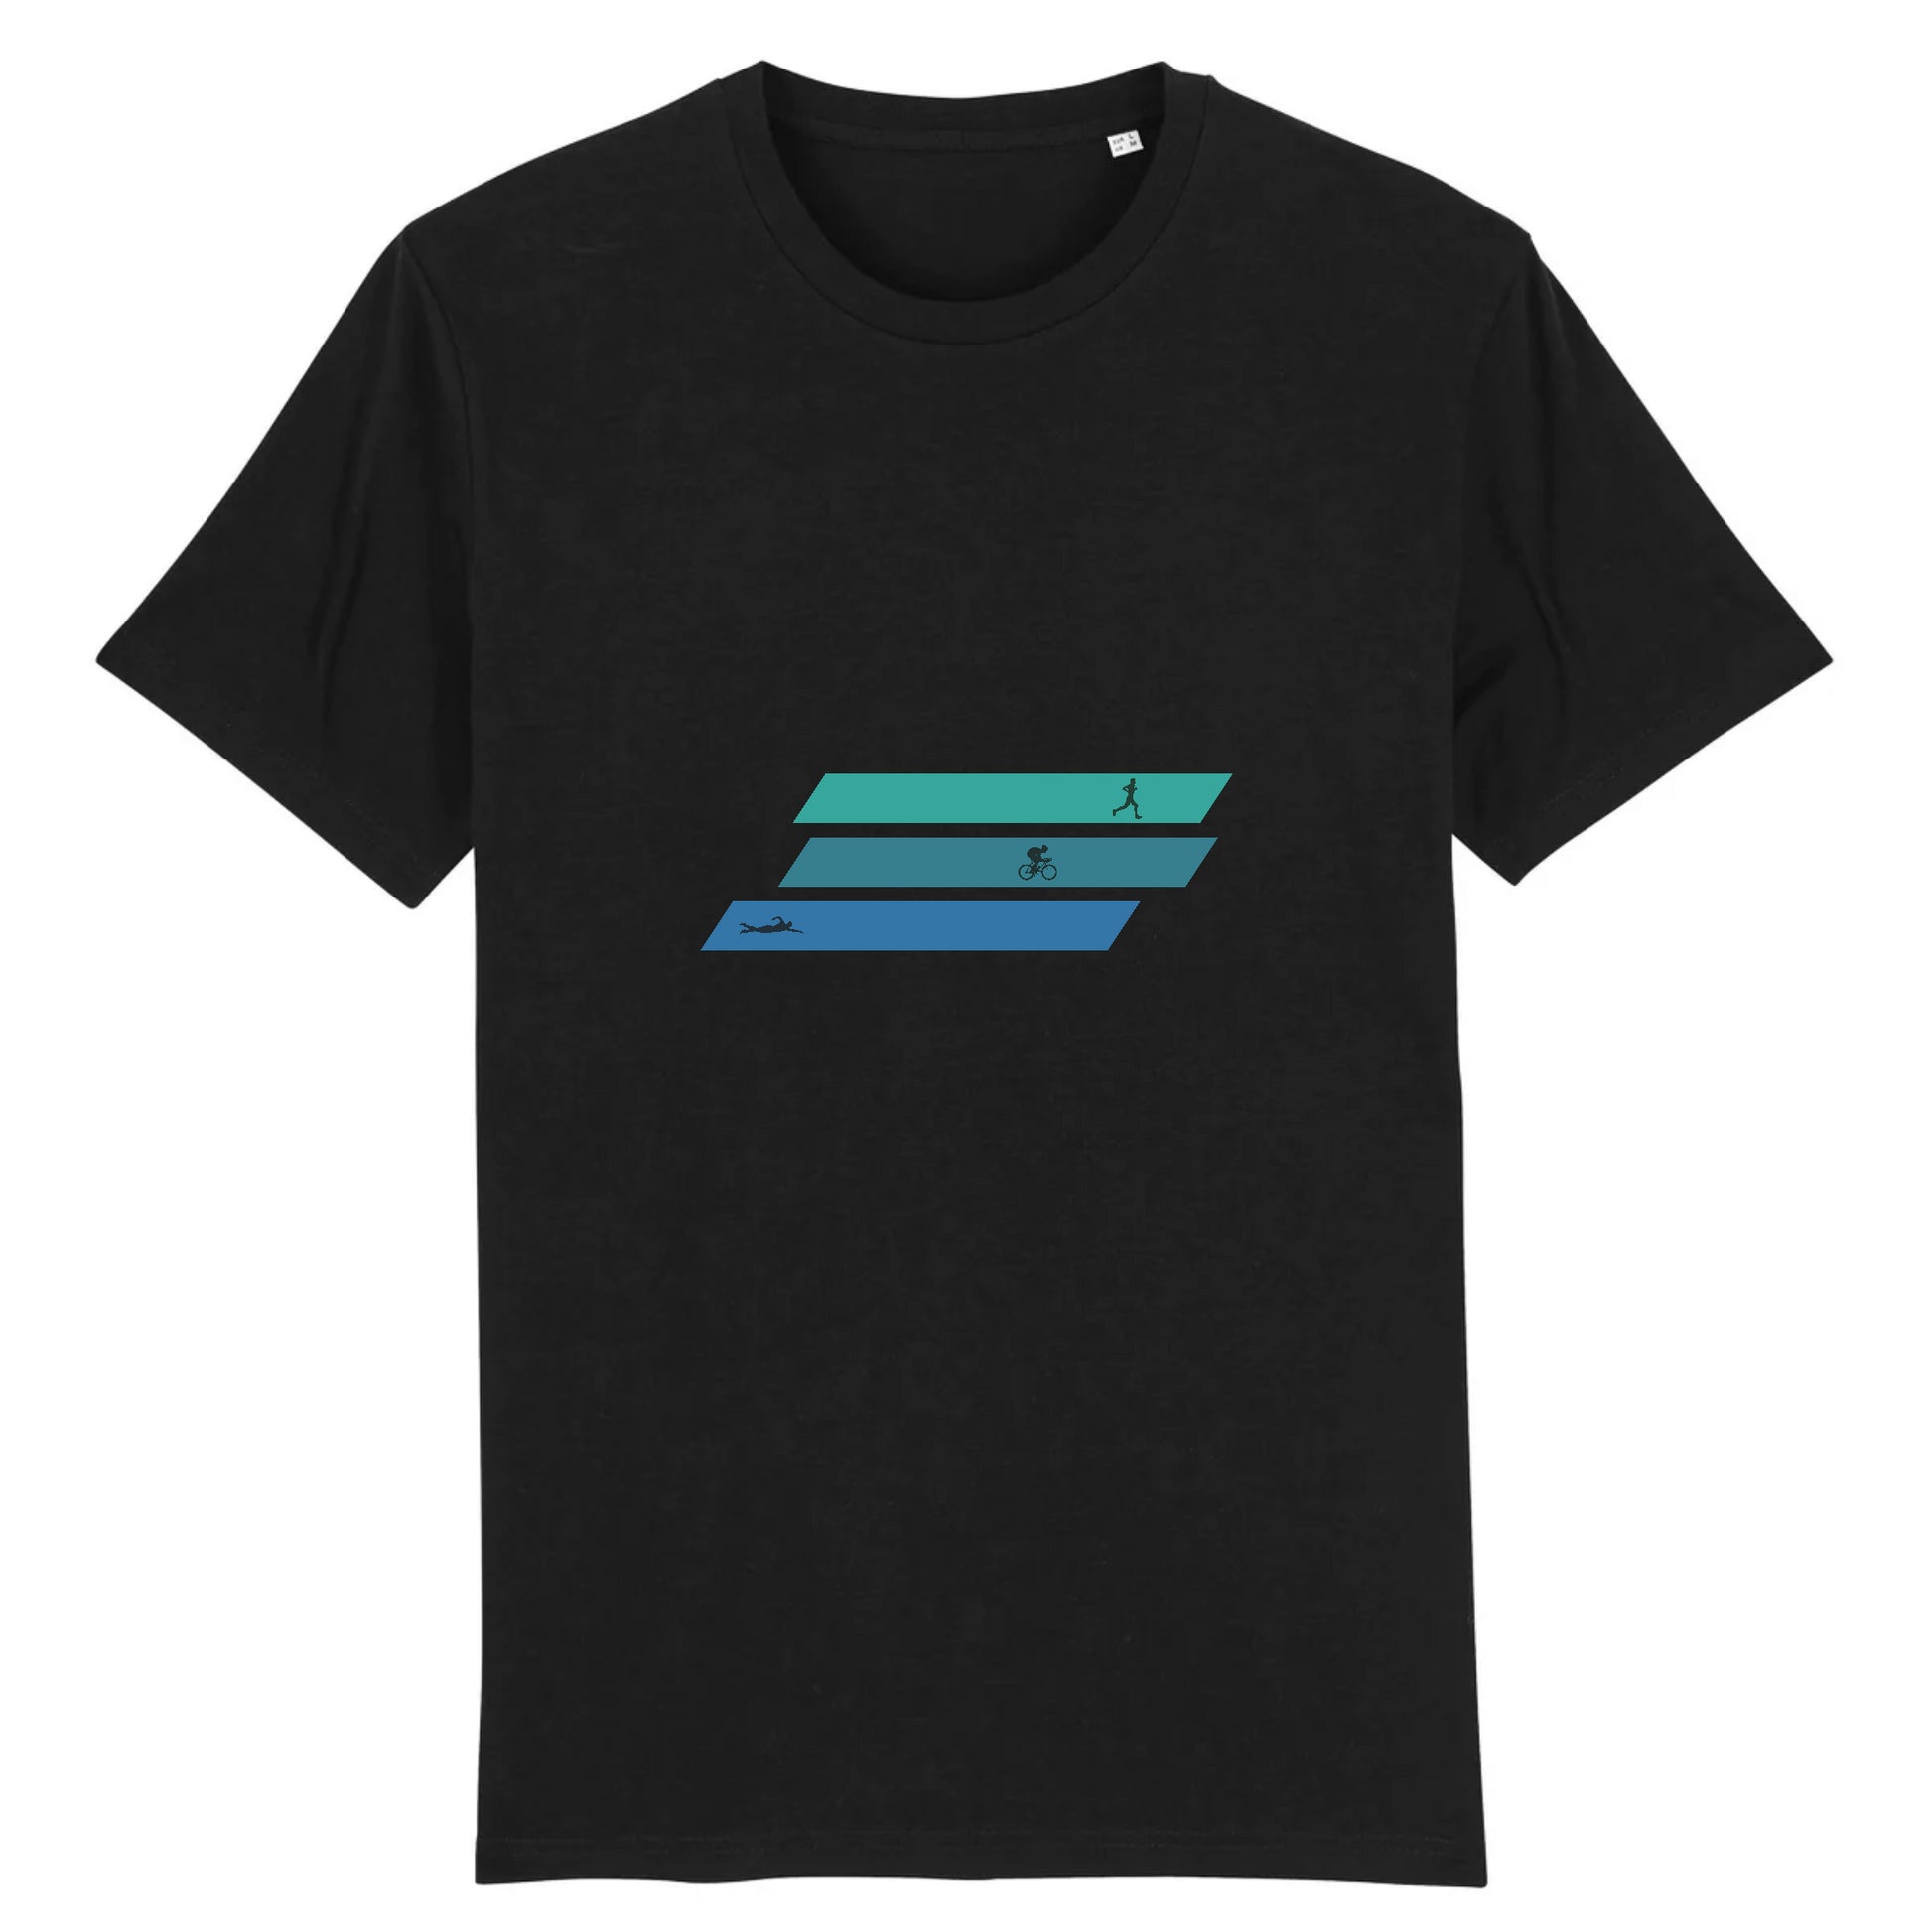 Noir T-shirt homme en coton bio inspiré du triathlon - Design unique et tendance